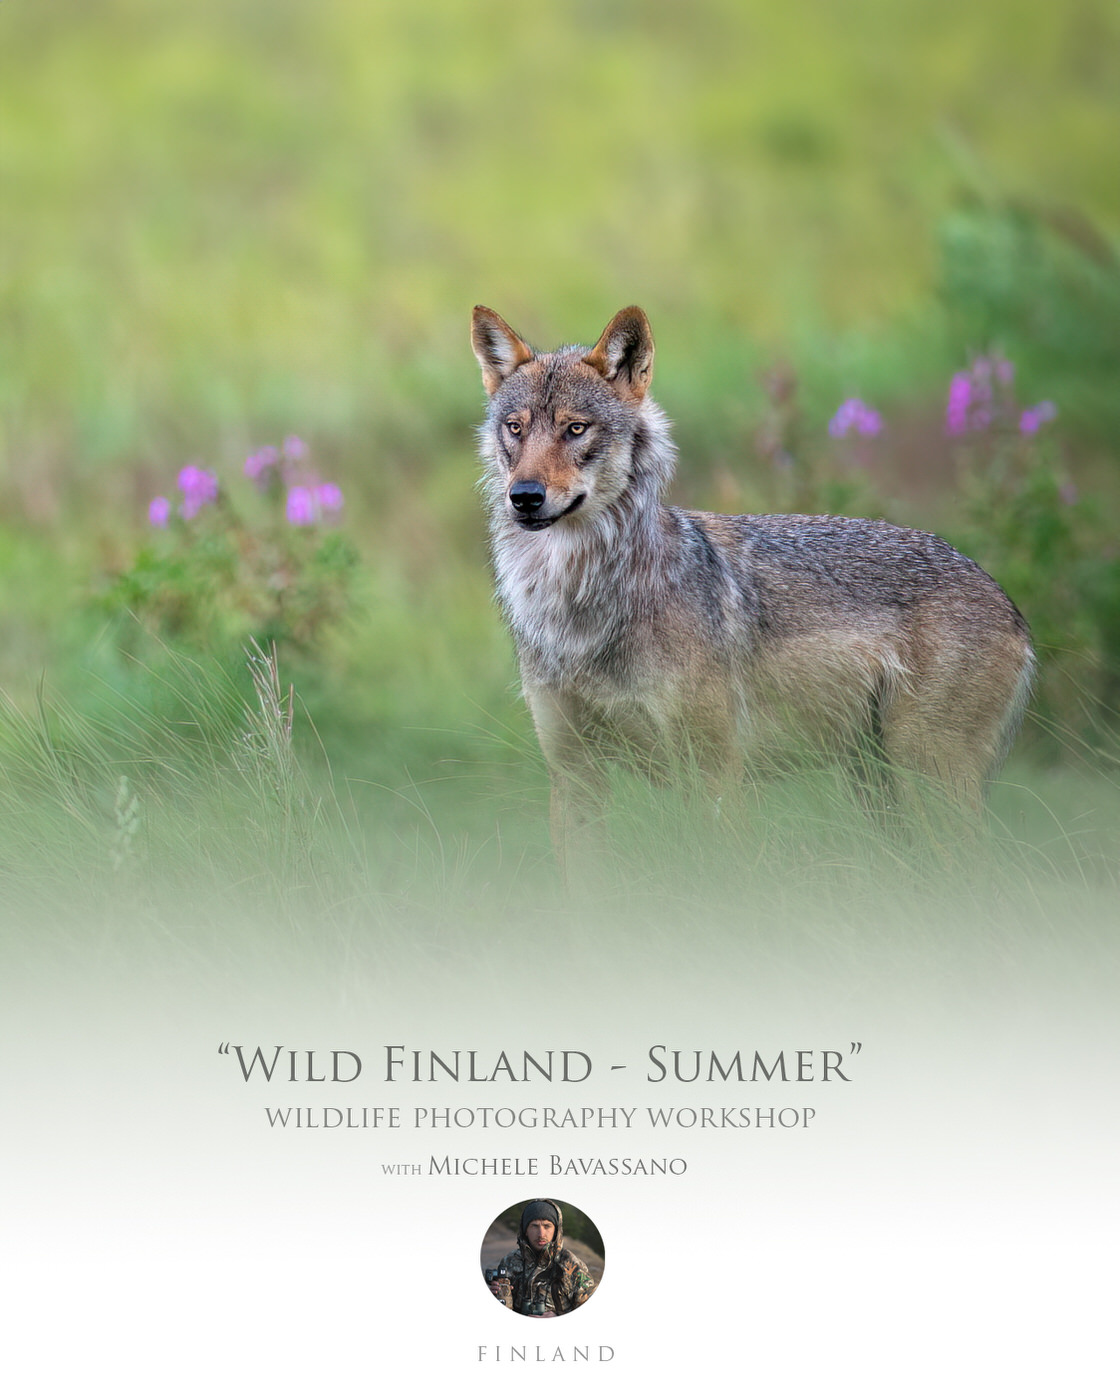 Wild Finland - Summer photographic workshop with Michele Bavassano